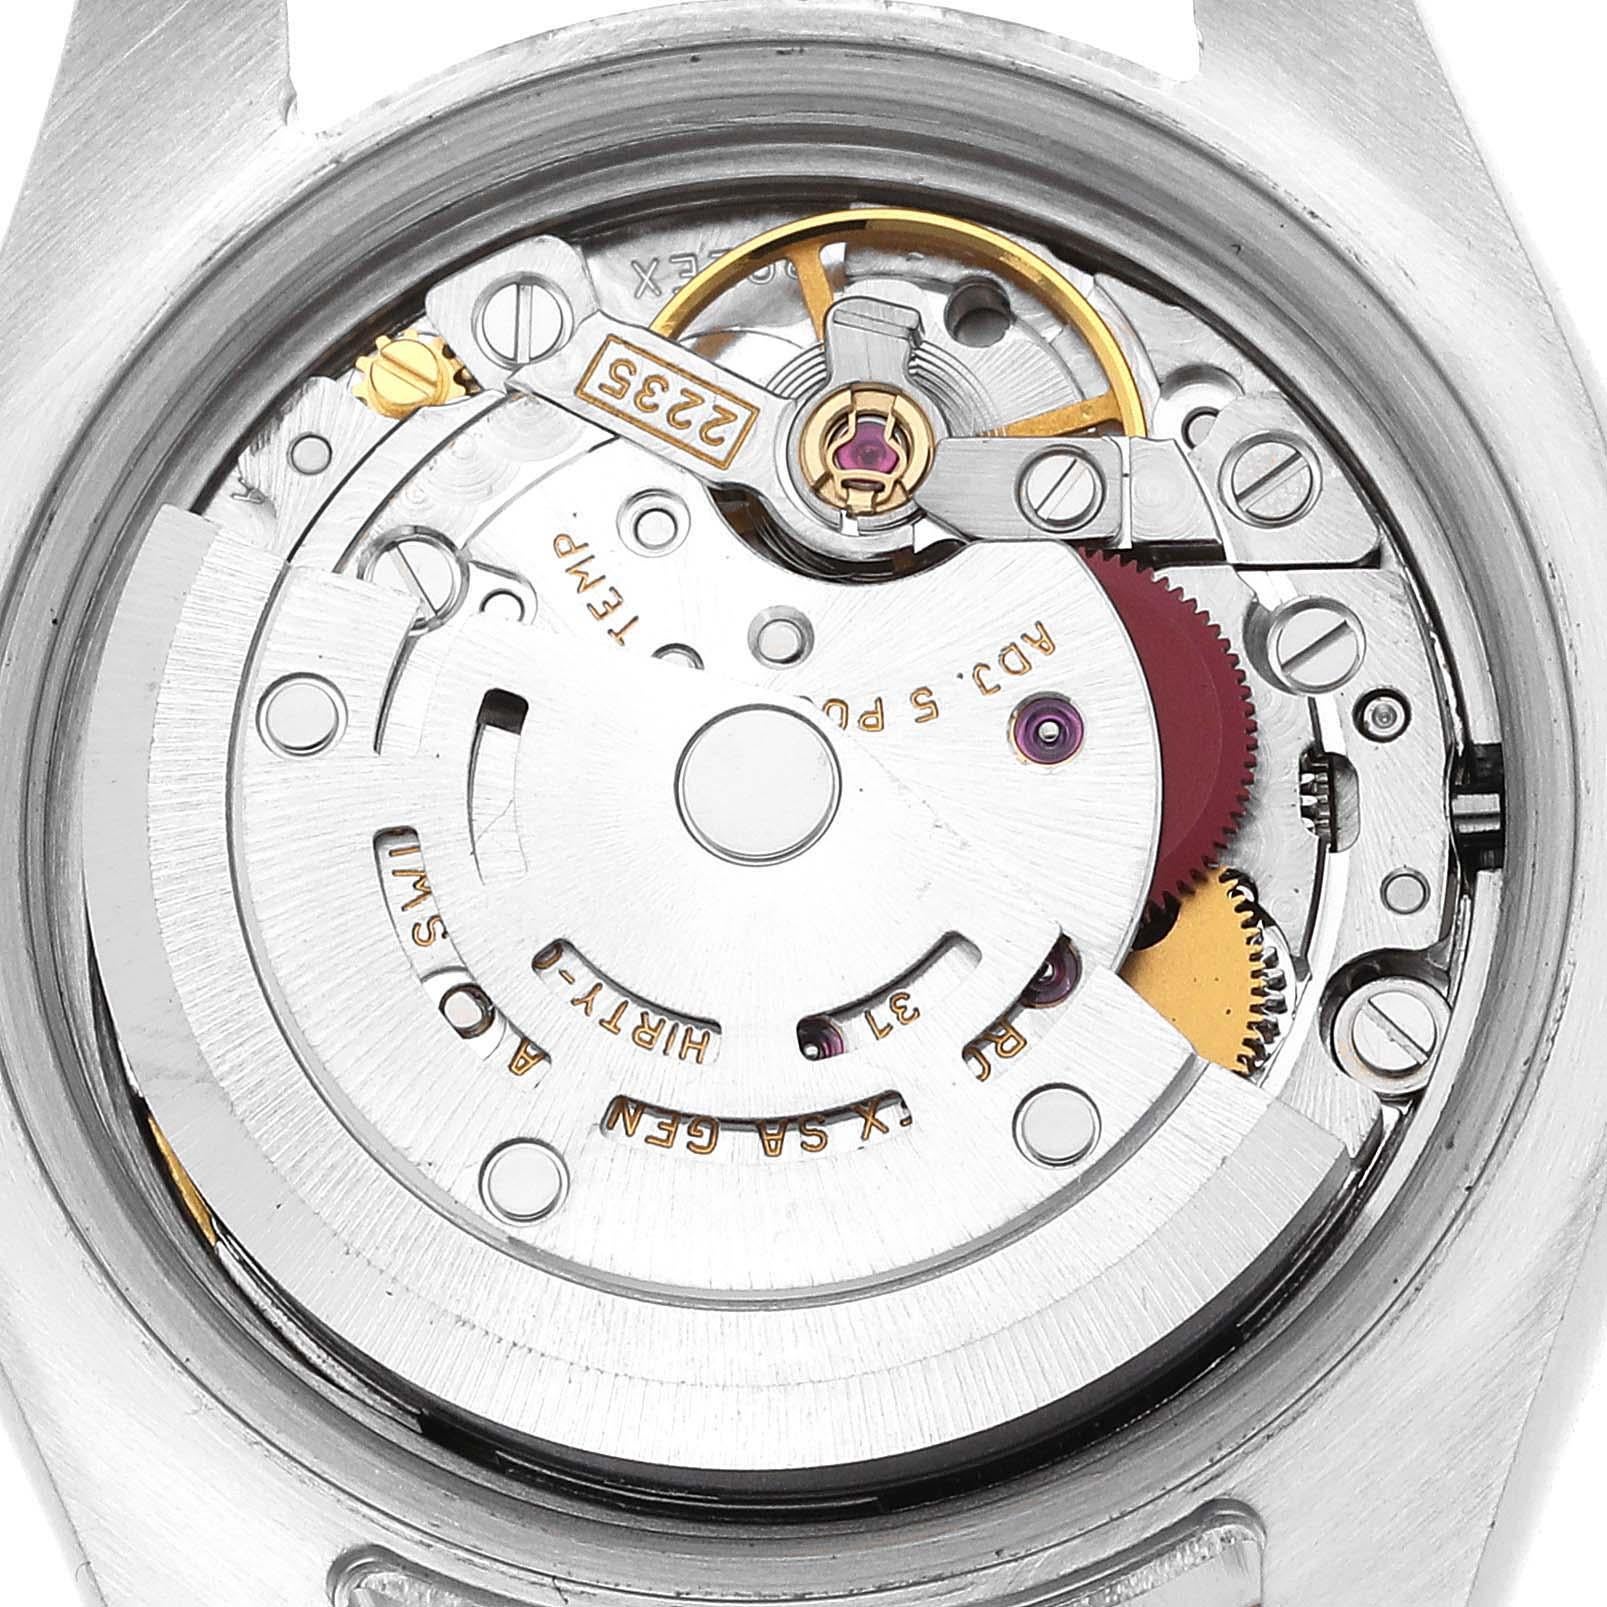 Rolex Datejust Steel Yellow Gold Blue Dial Ladies Watch 179163. Mouvement automatique à remontage automatique, officiellement certifié chronomètre, avec fonction de date rapide. Boîtier oyster en acier inoxydable de 26.0 mm de diamètre. Logo Rolex